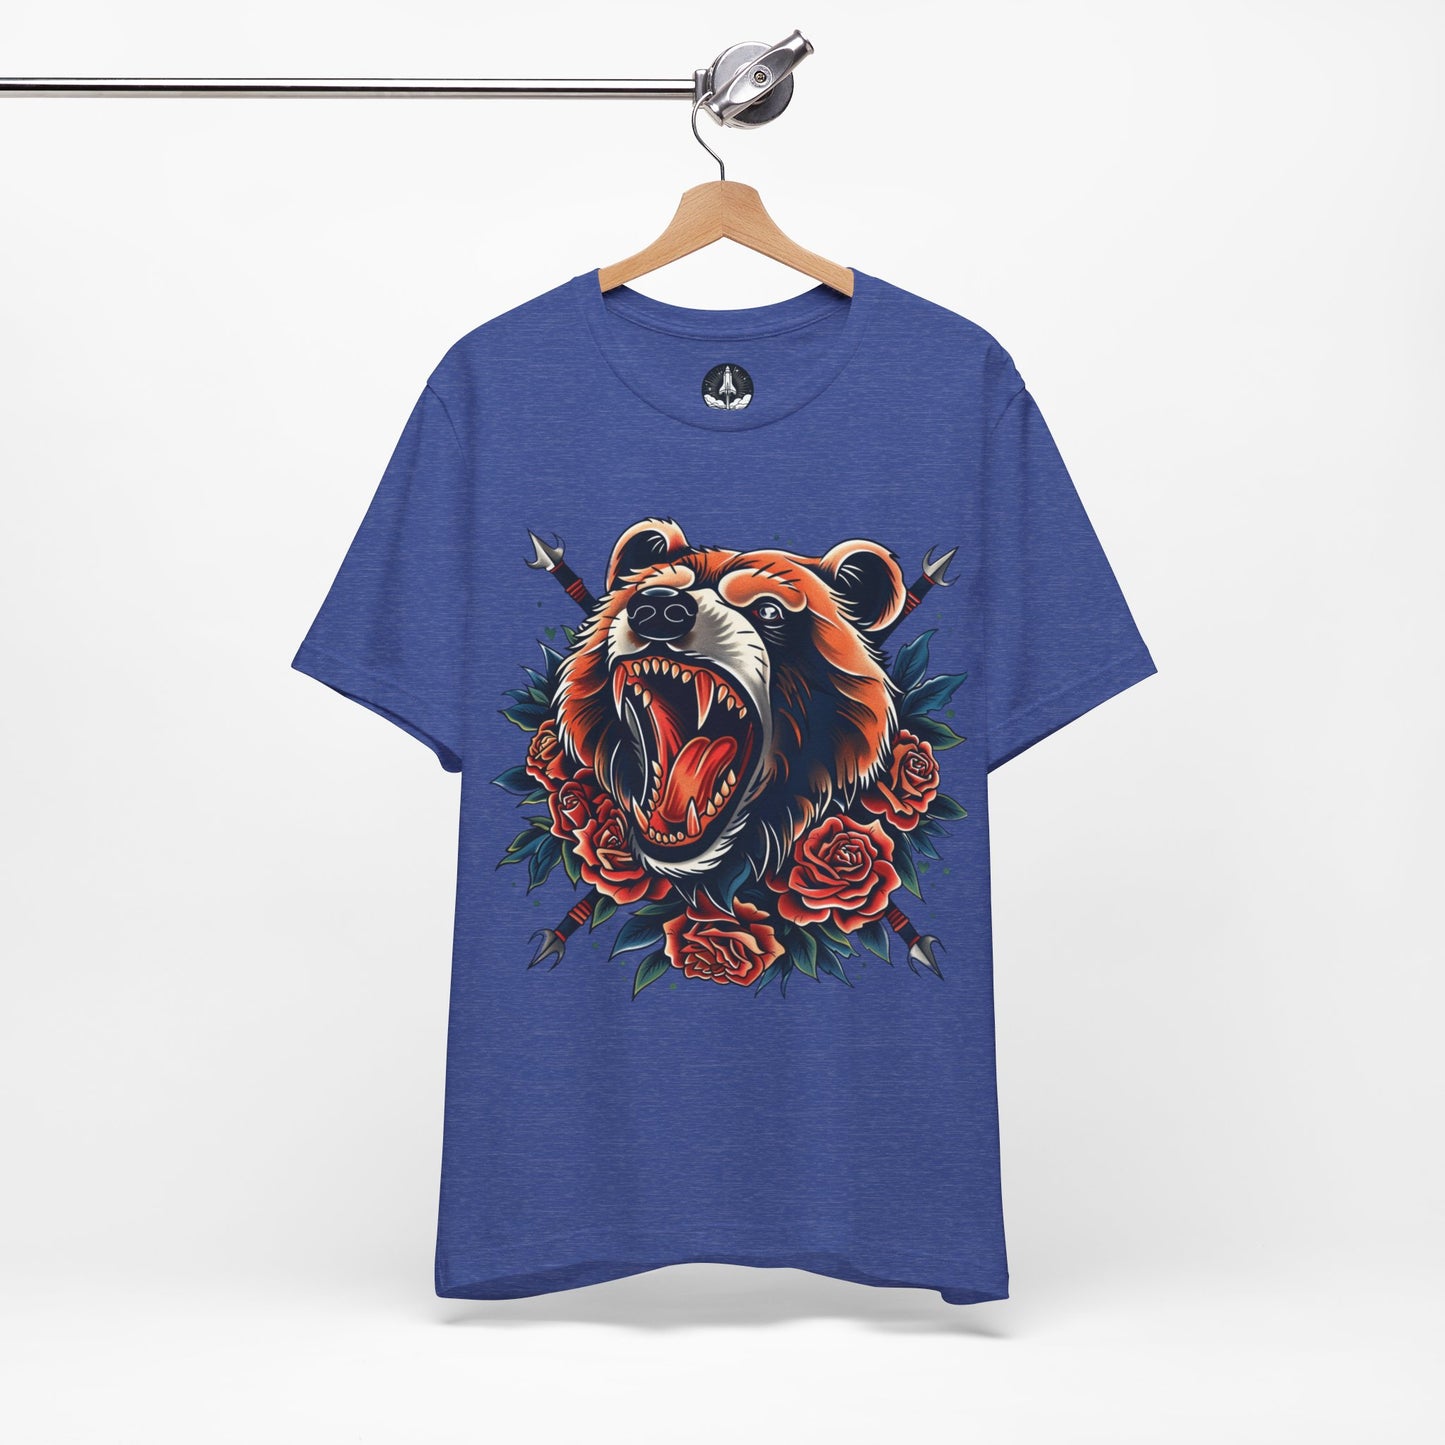 Classic Bear Tattoo T-Shirt